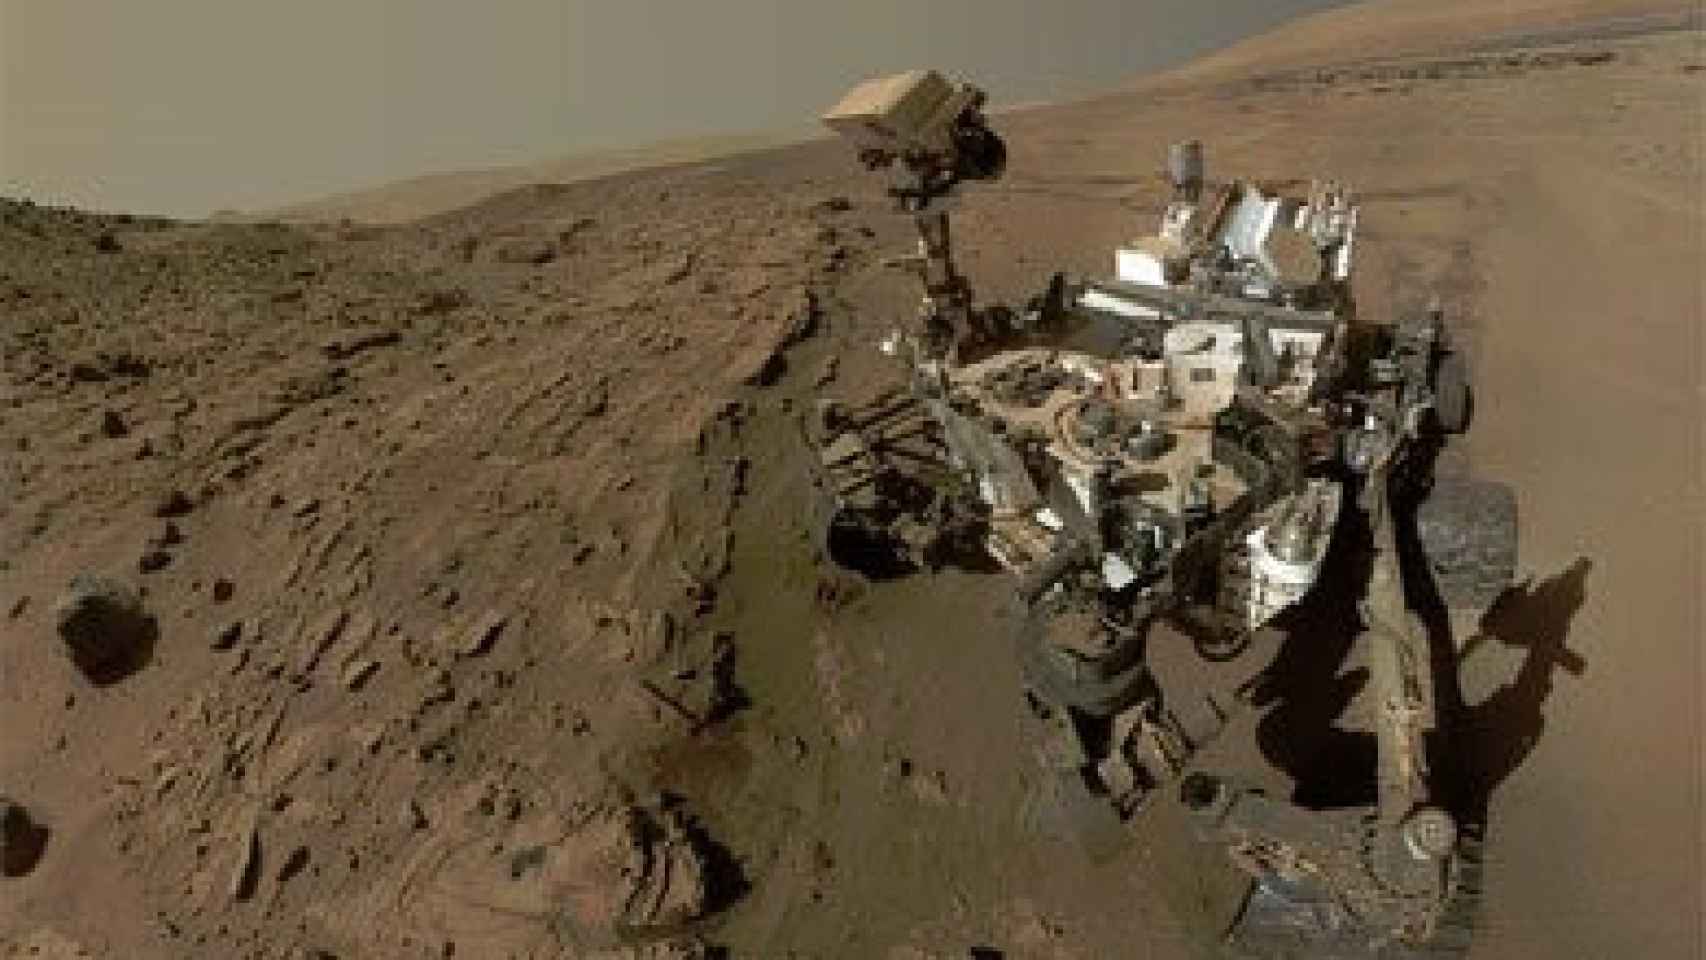 Selfie de Curiosity para celebrar su primer año marciano en el planeta rojo.